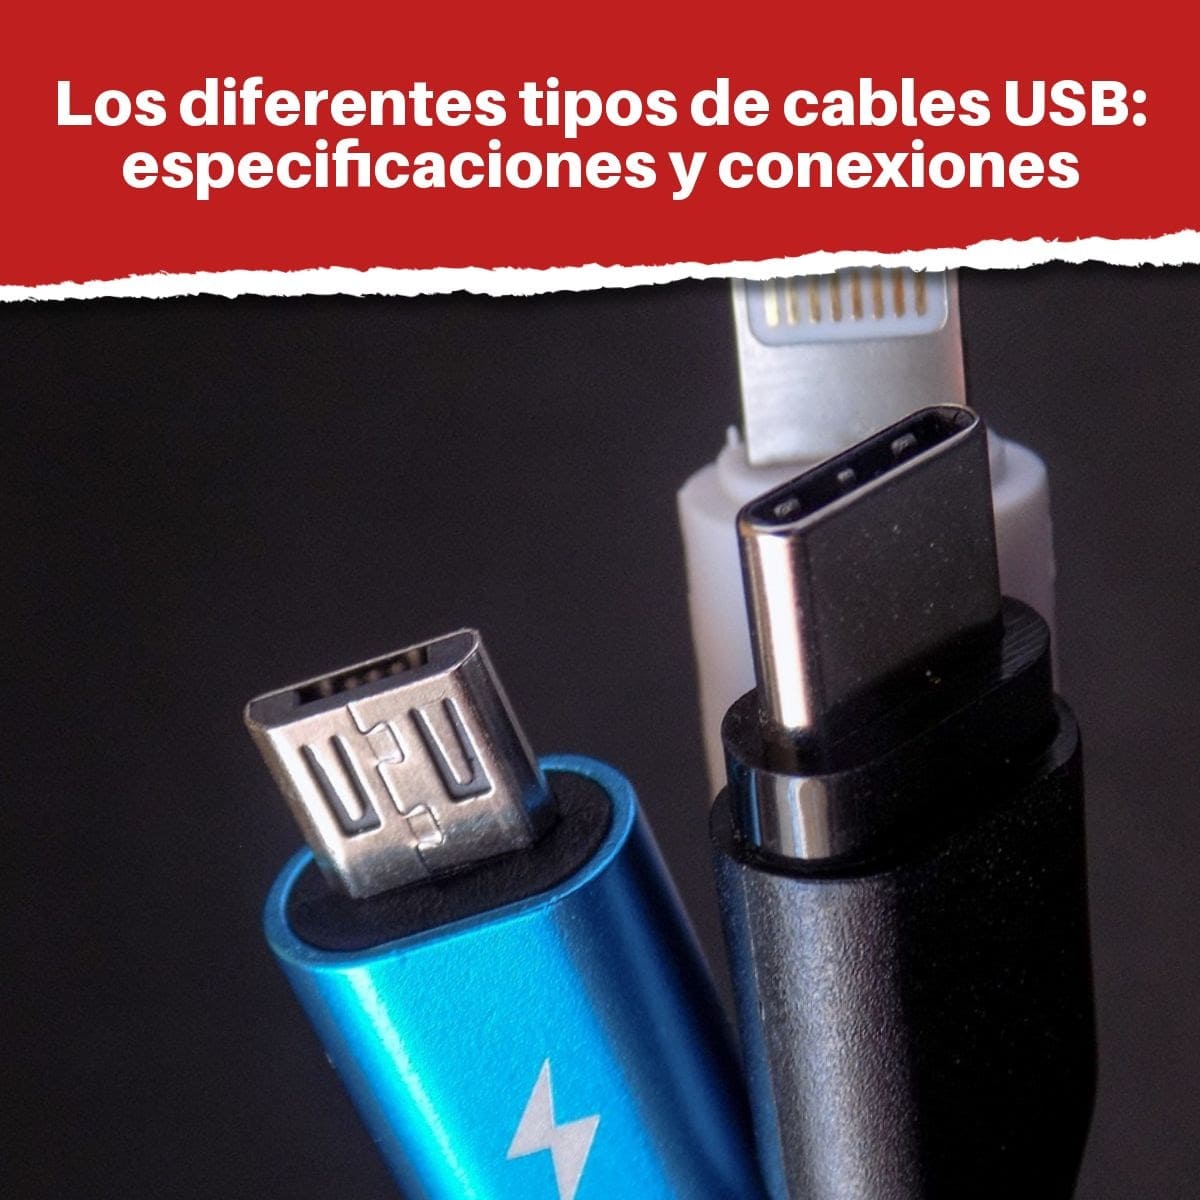 Los diferentes tipos de cables USB: especificaciones y conexiones (USB tipo A, USB tipo C...)